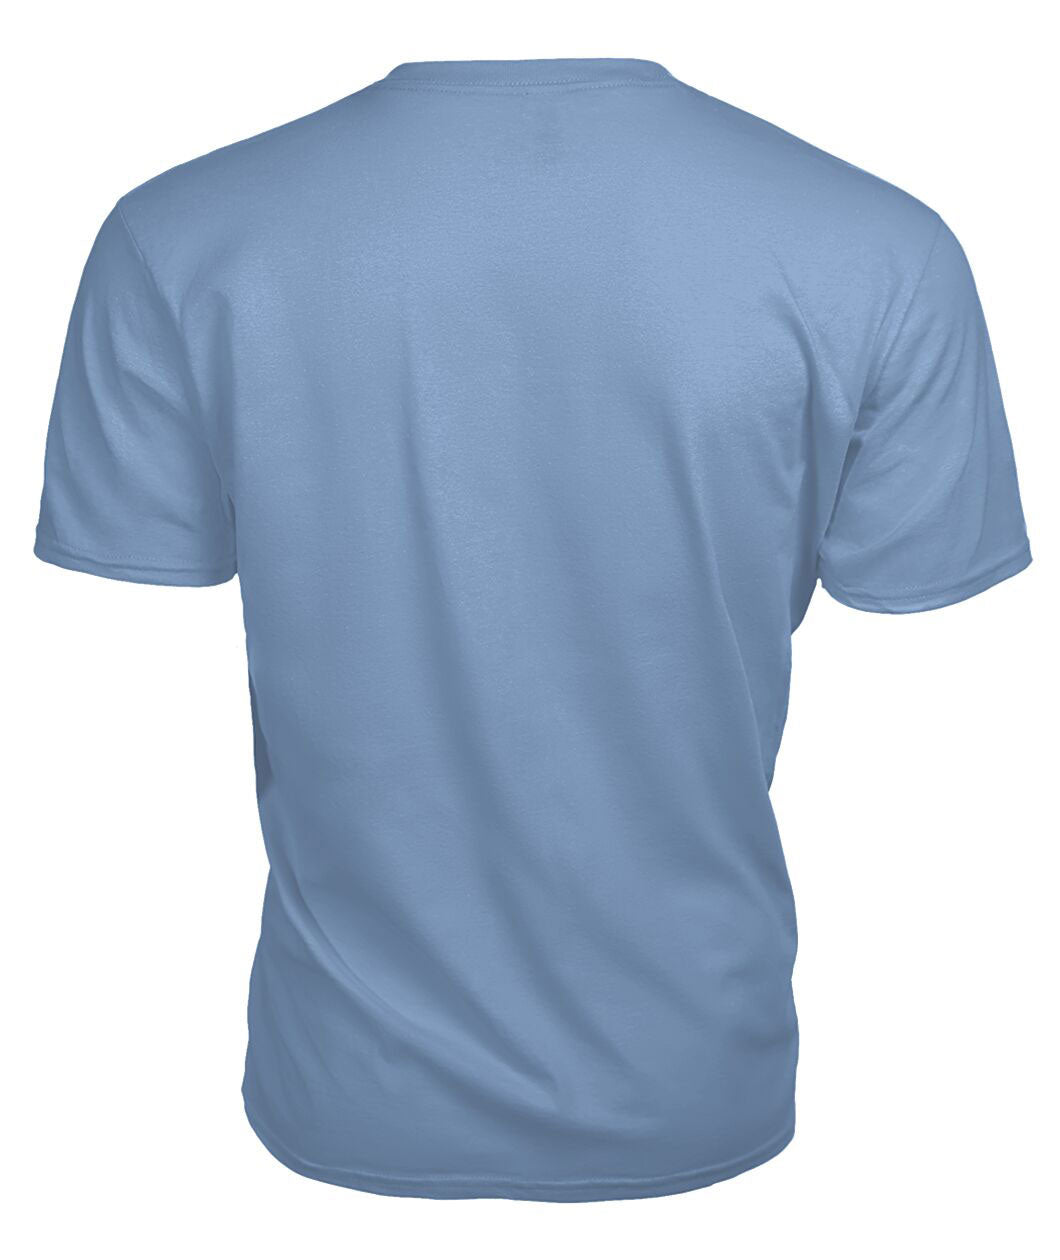 Sempill Modern Tartan Crest 2D T-shirt - Blood Runs Through My Veins Style